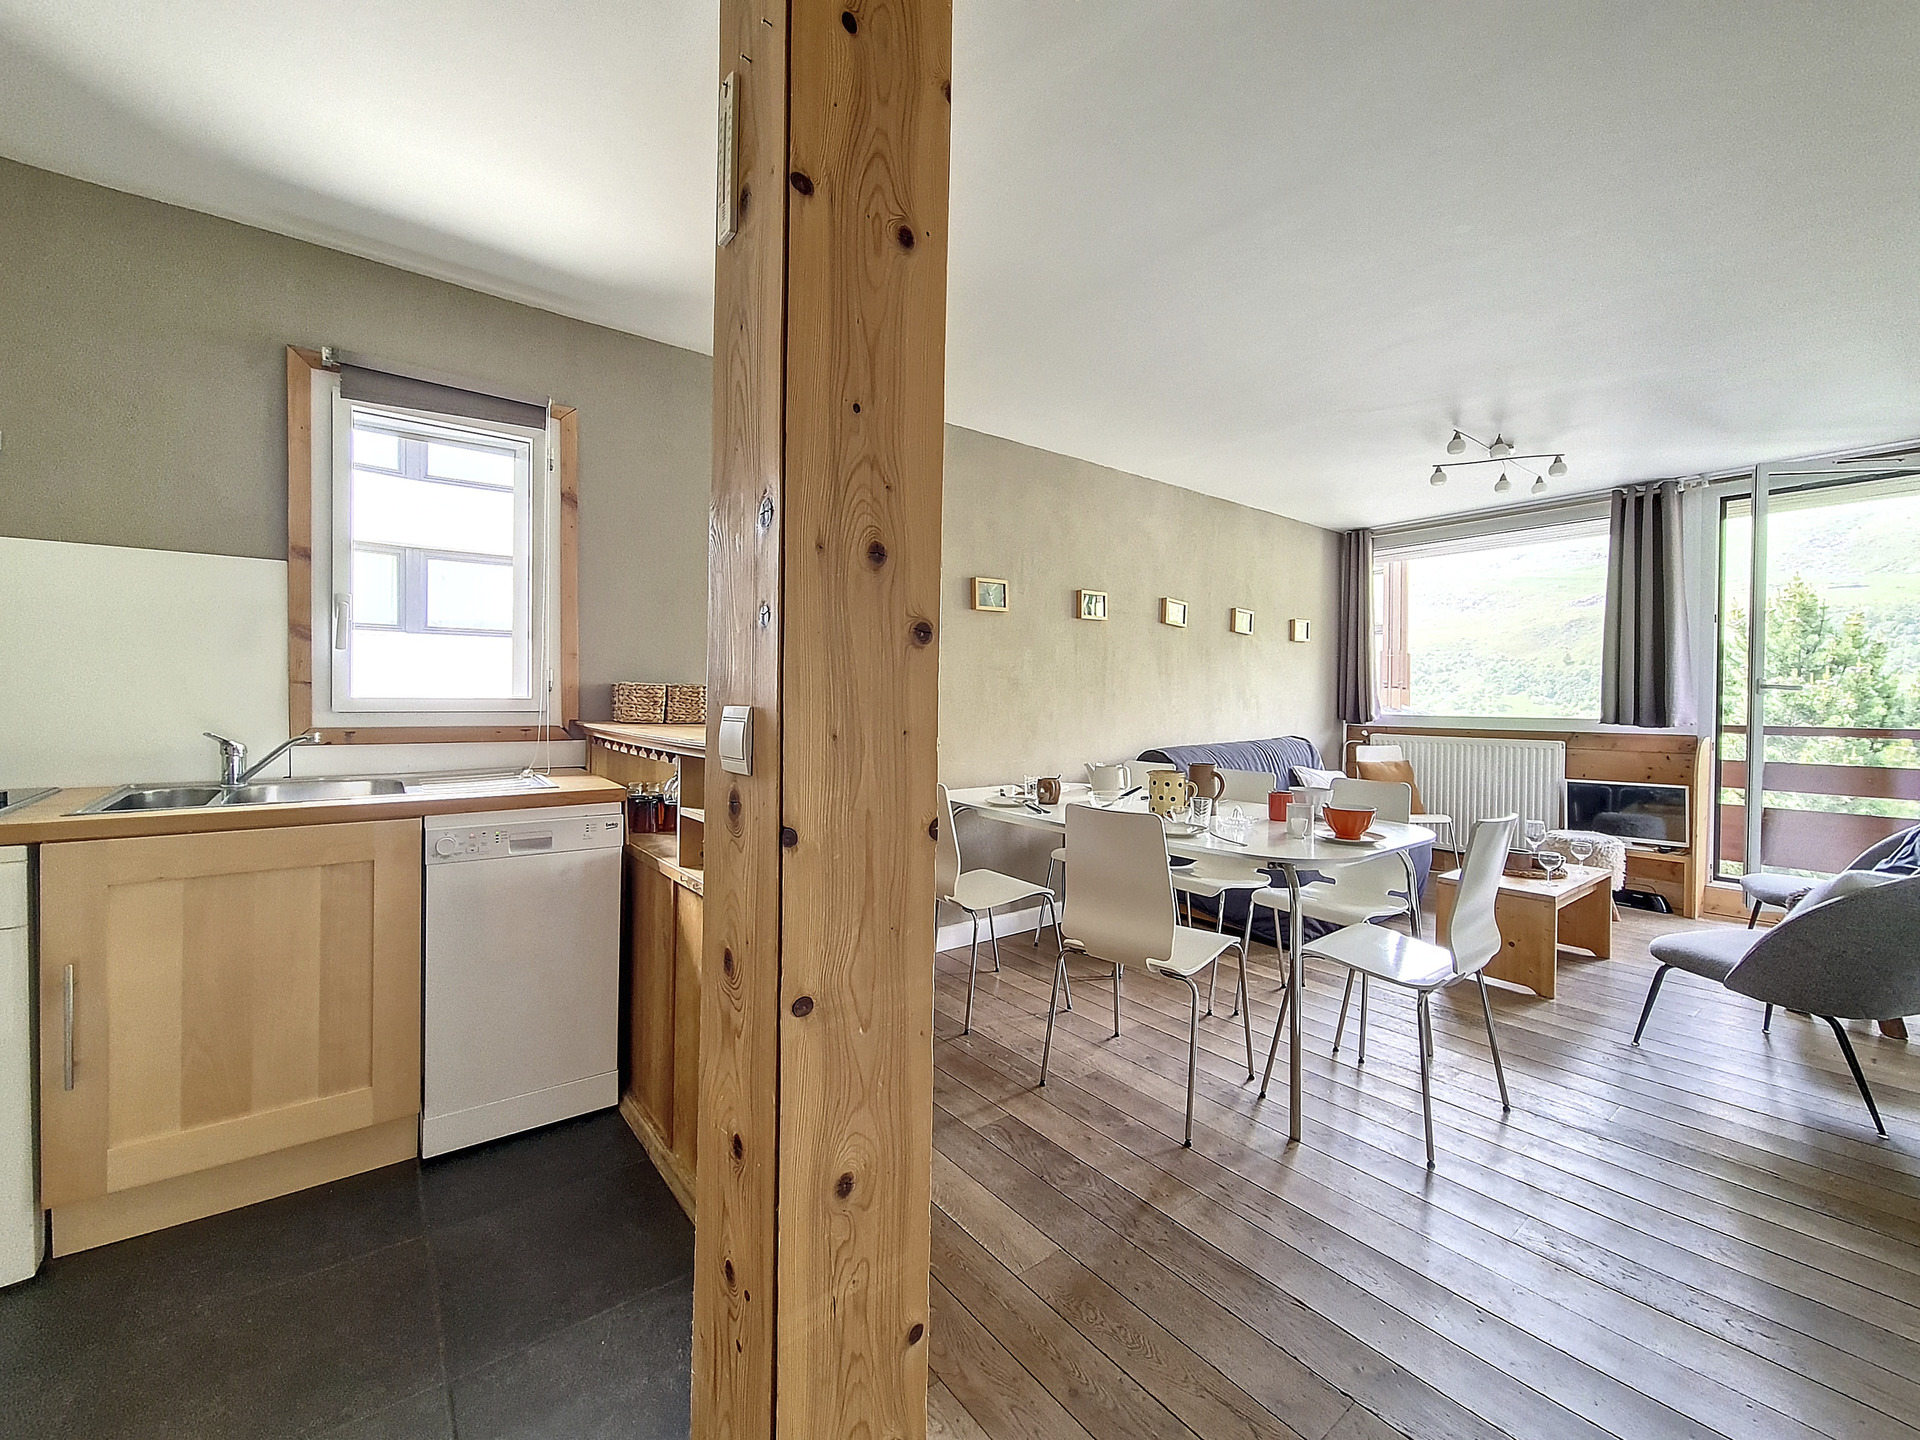 3 rooms 8 people - travelski home choice - Apartements BEAUFORTAIN - Les Menuires Croisette